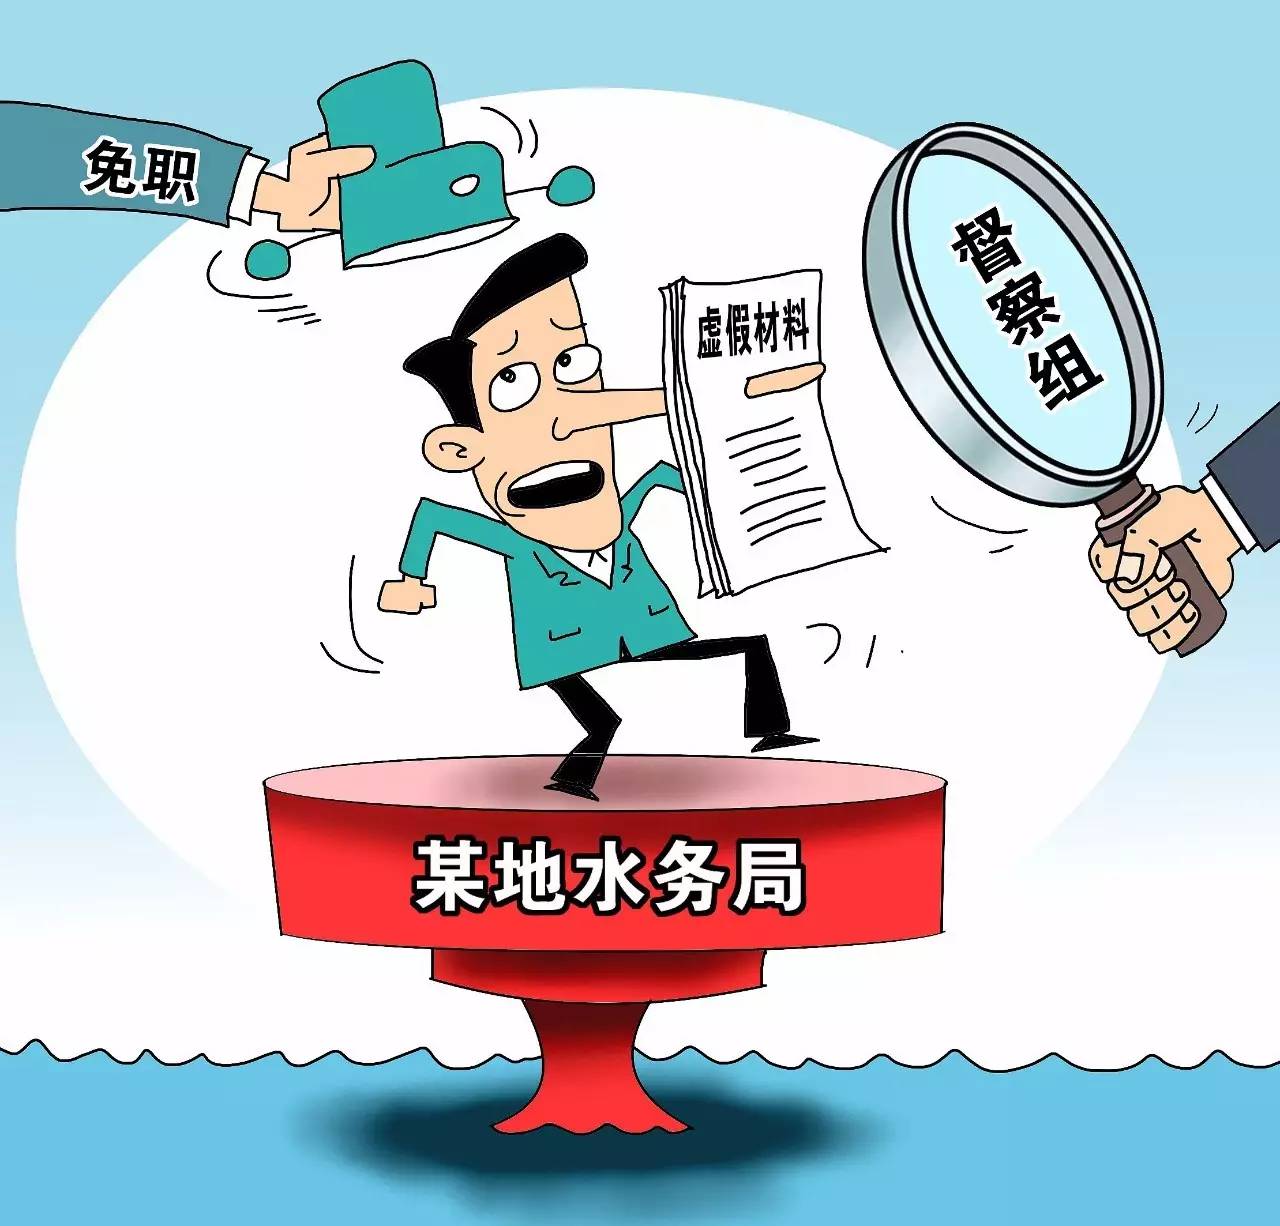 重磅 | 中央环保督察组严厉批评:天津 做表面文